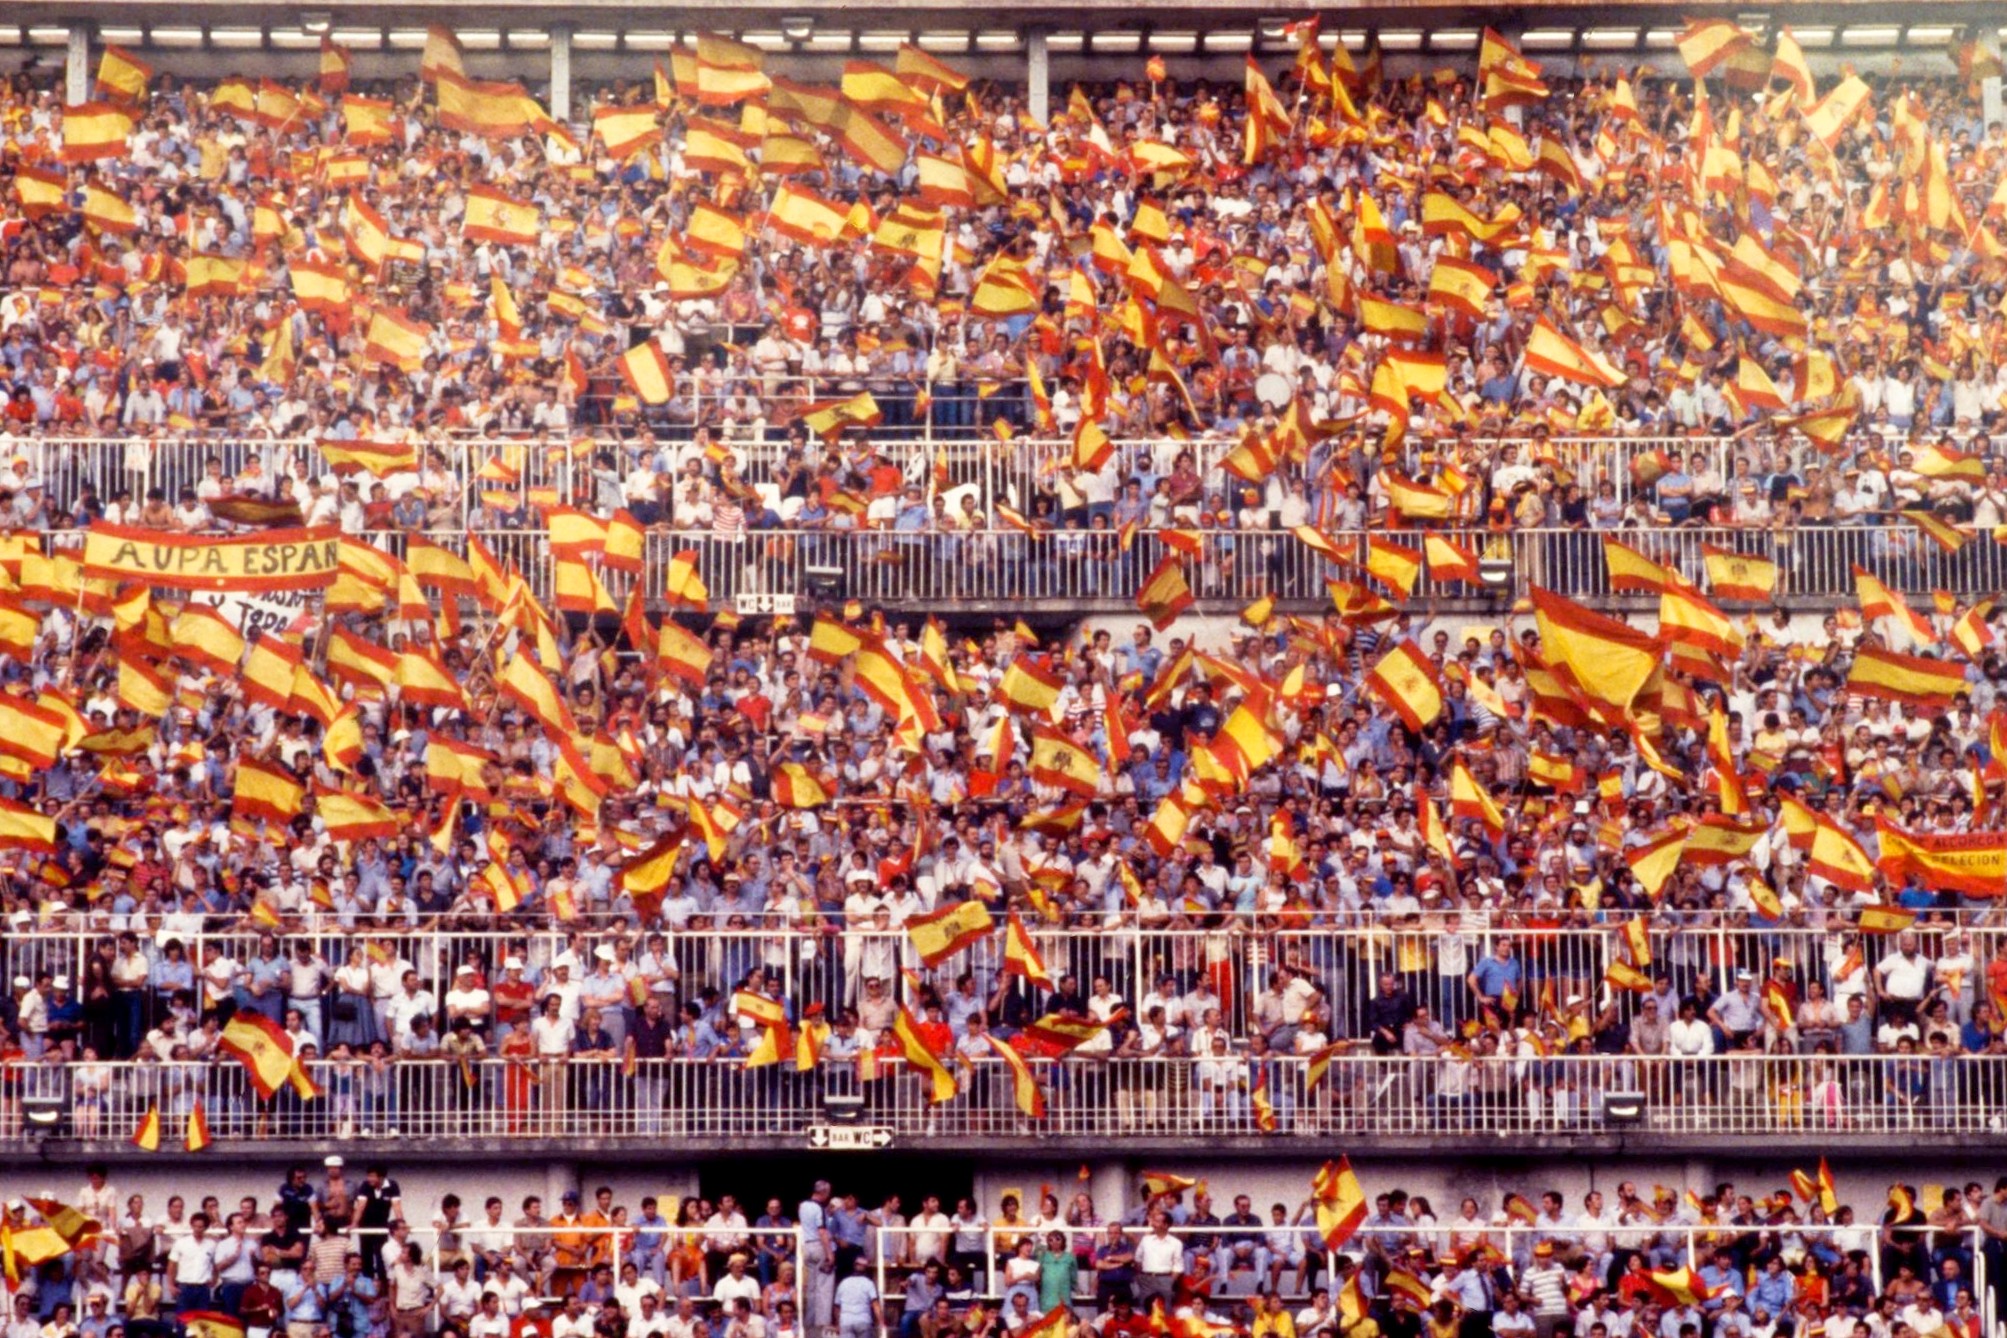 Hemeroteca RMCF on "Banderas al viendo en el Bernabéu durante uno de los partidos de la selección española Mundial 82. https://t.co/As8VOV58eG" / Twitter